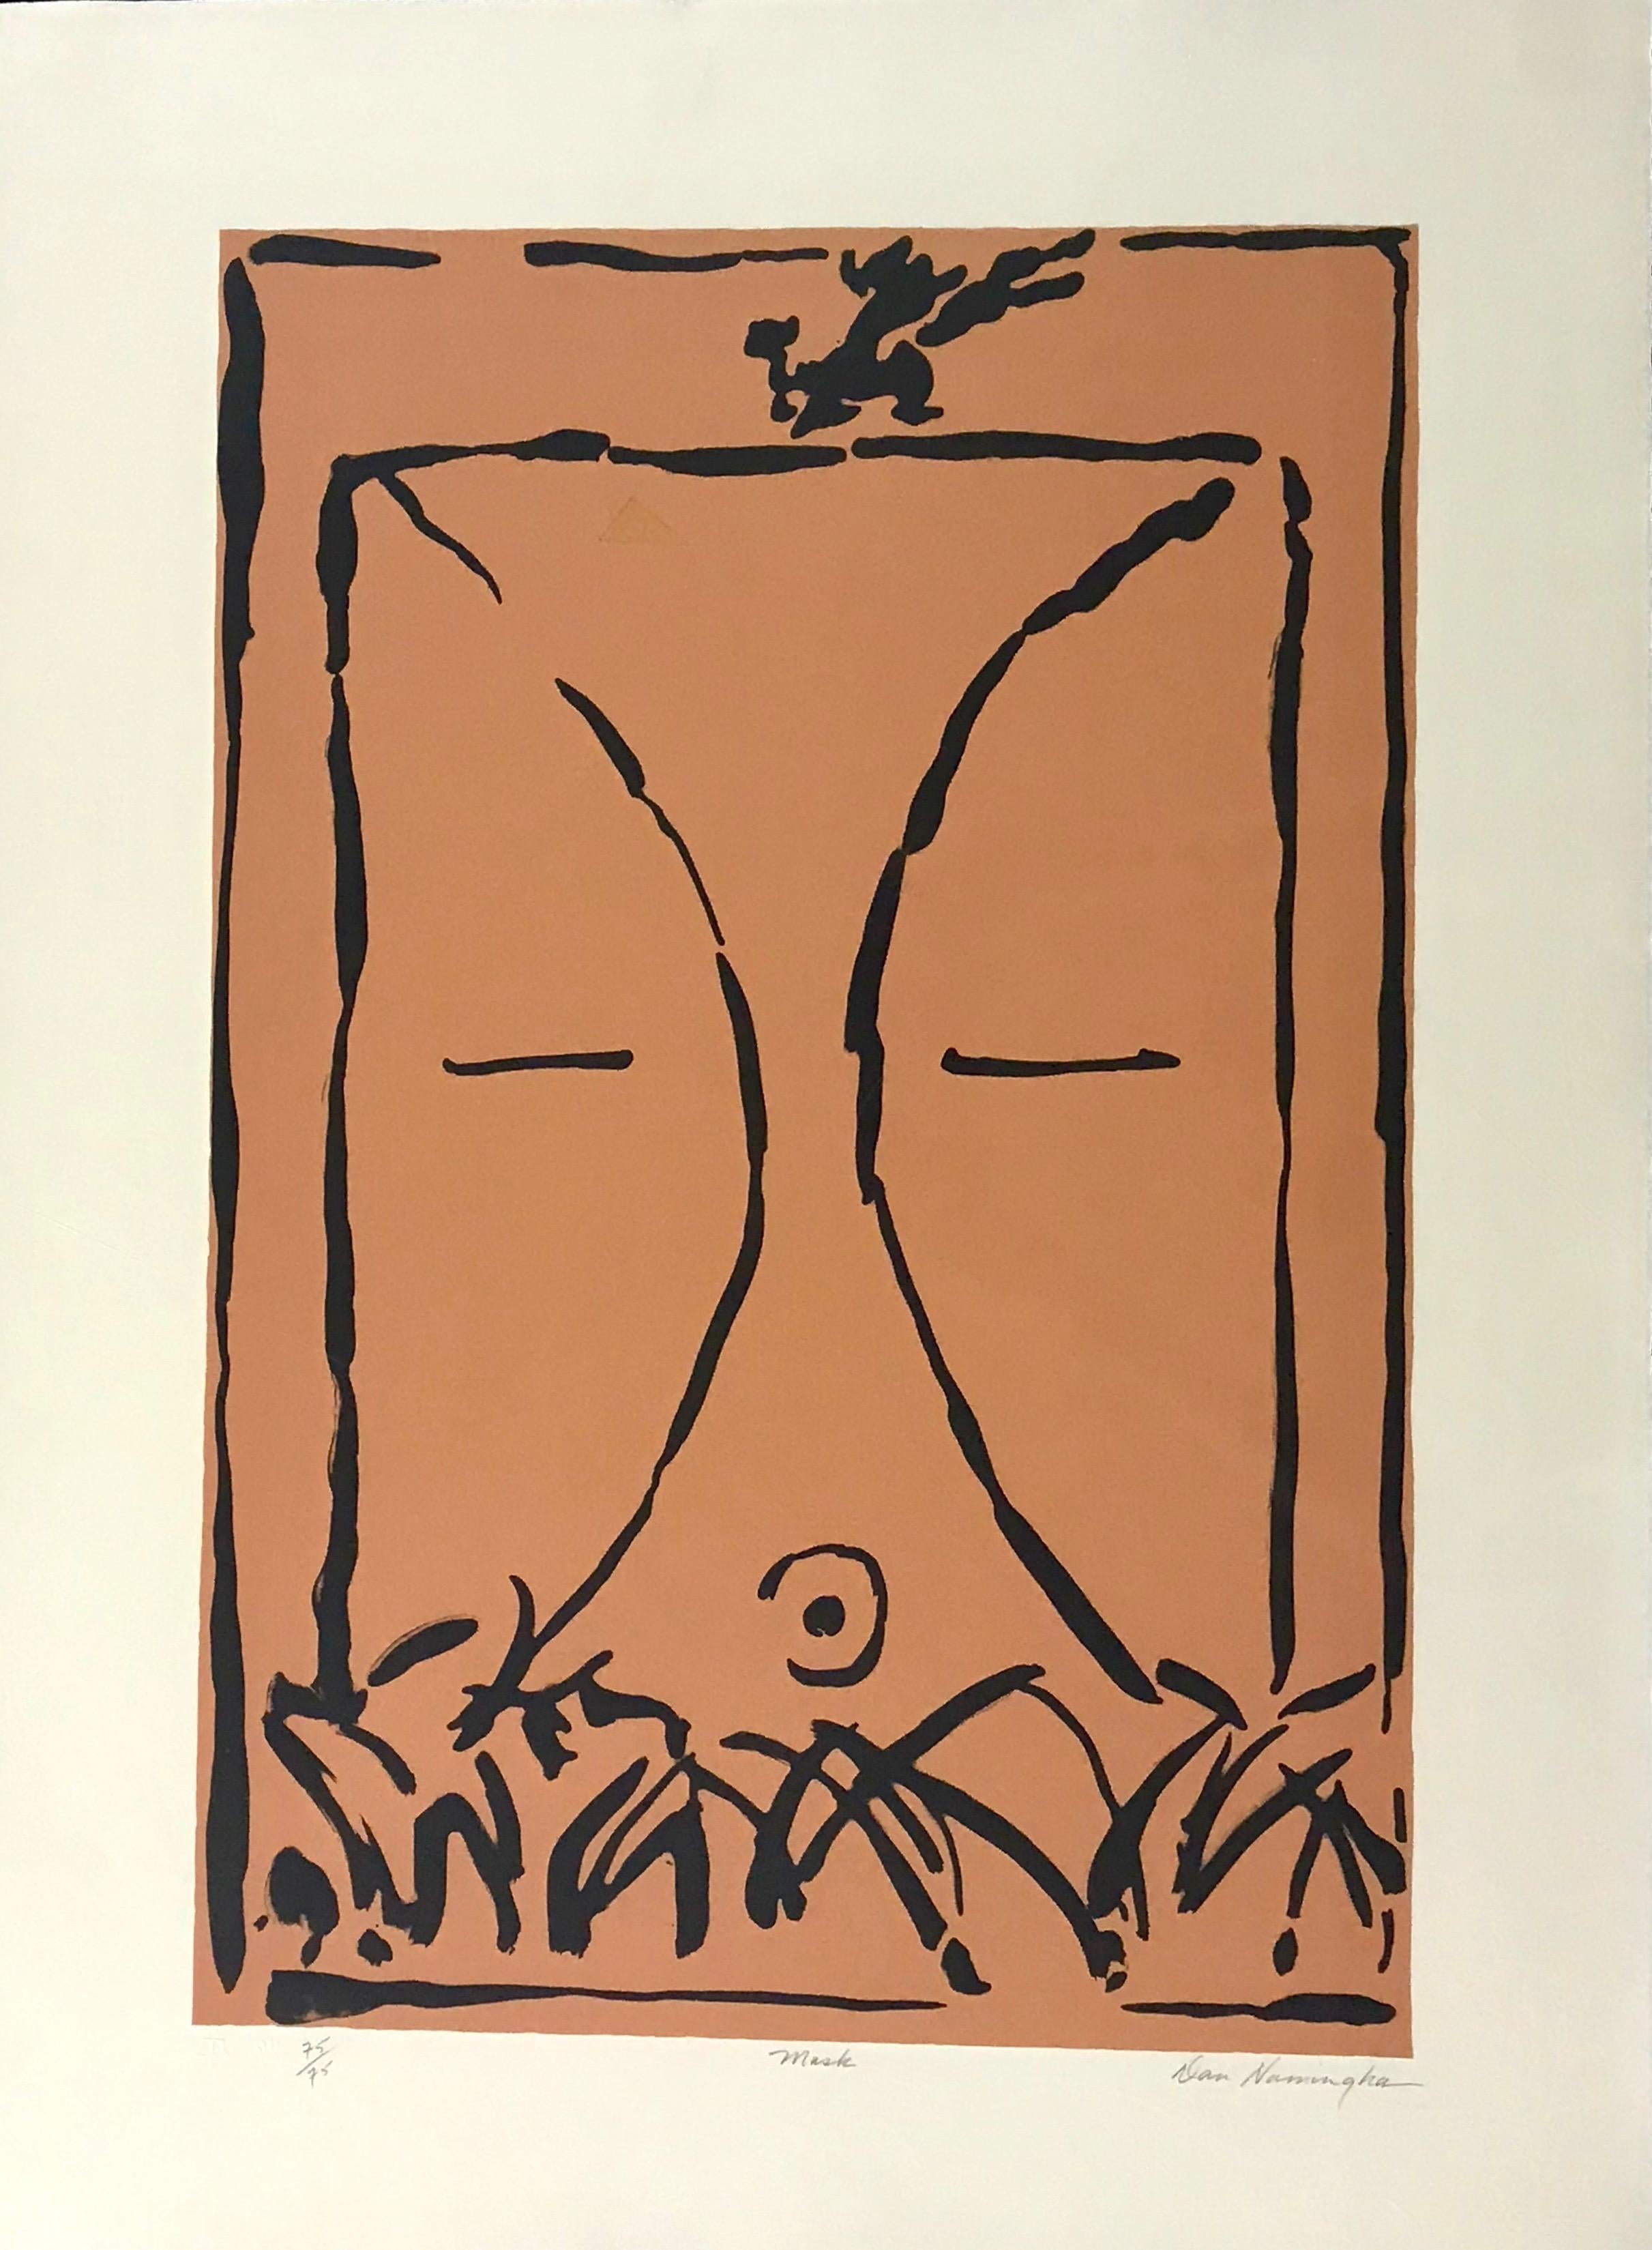 Maschera, litografia in edizione limitata, Hopi, kachina, colore, marrone, pesca, senza cornice